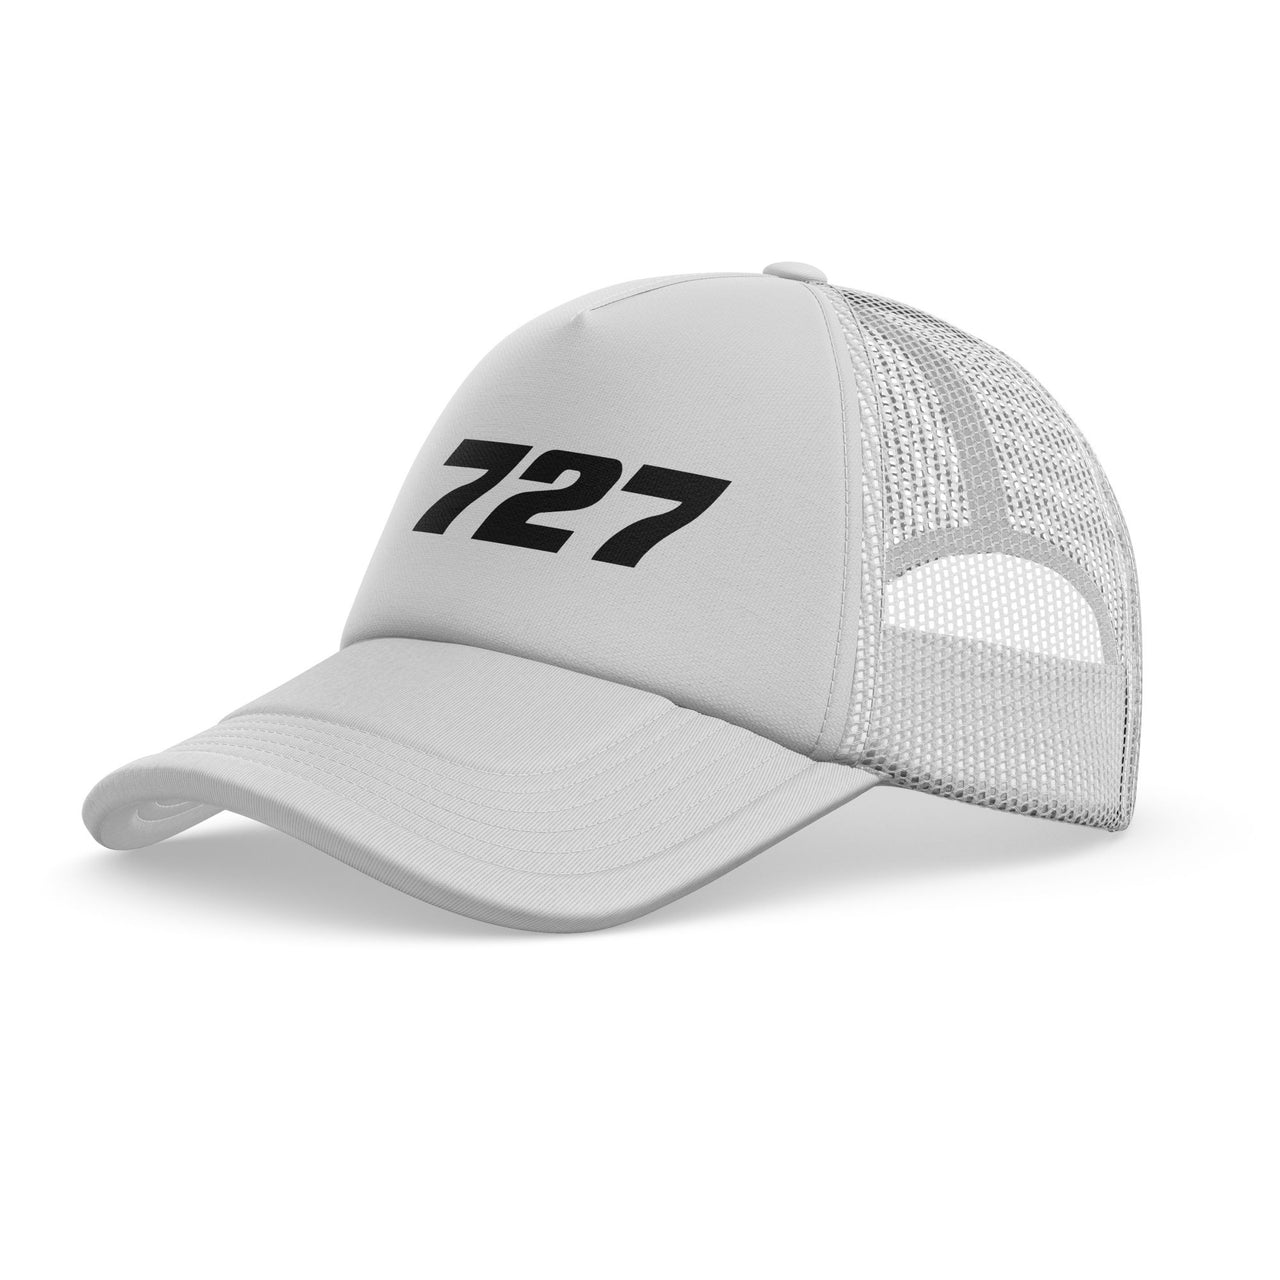 727 Flat Text Designed Trucker Caps & Hats